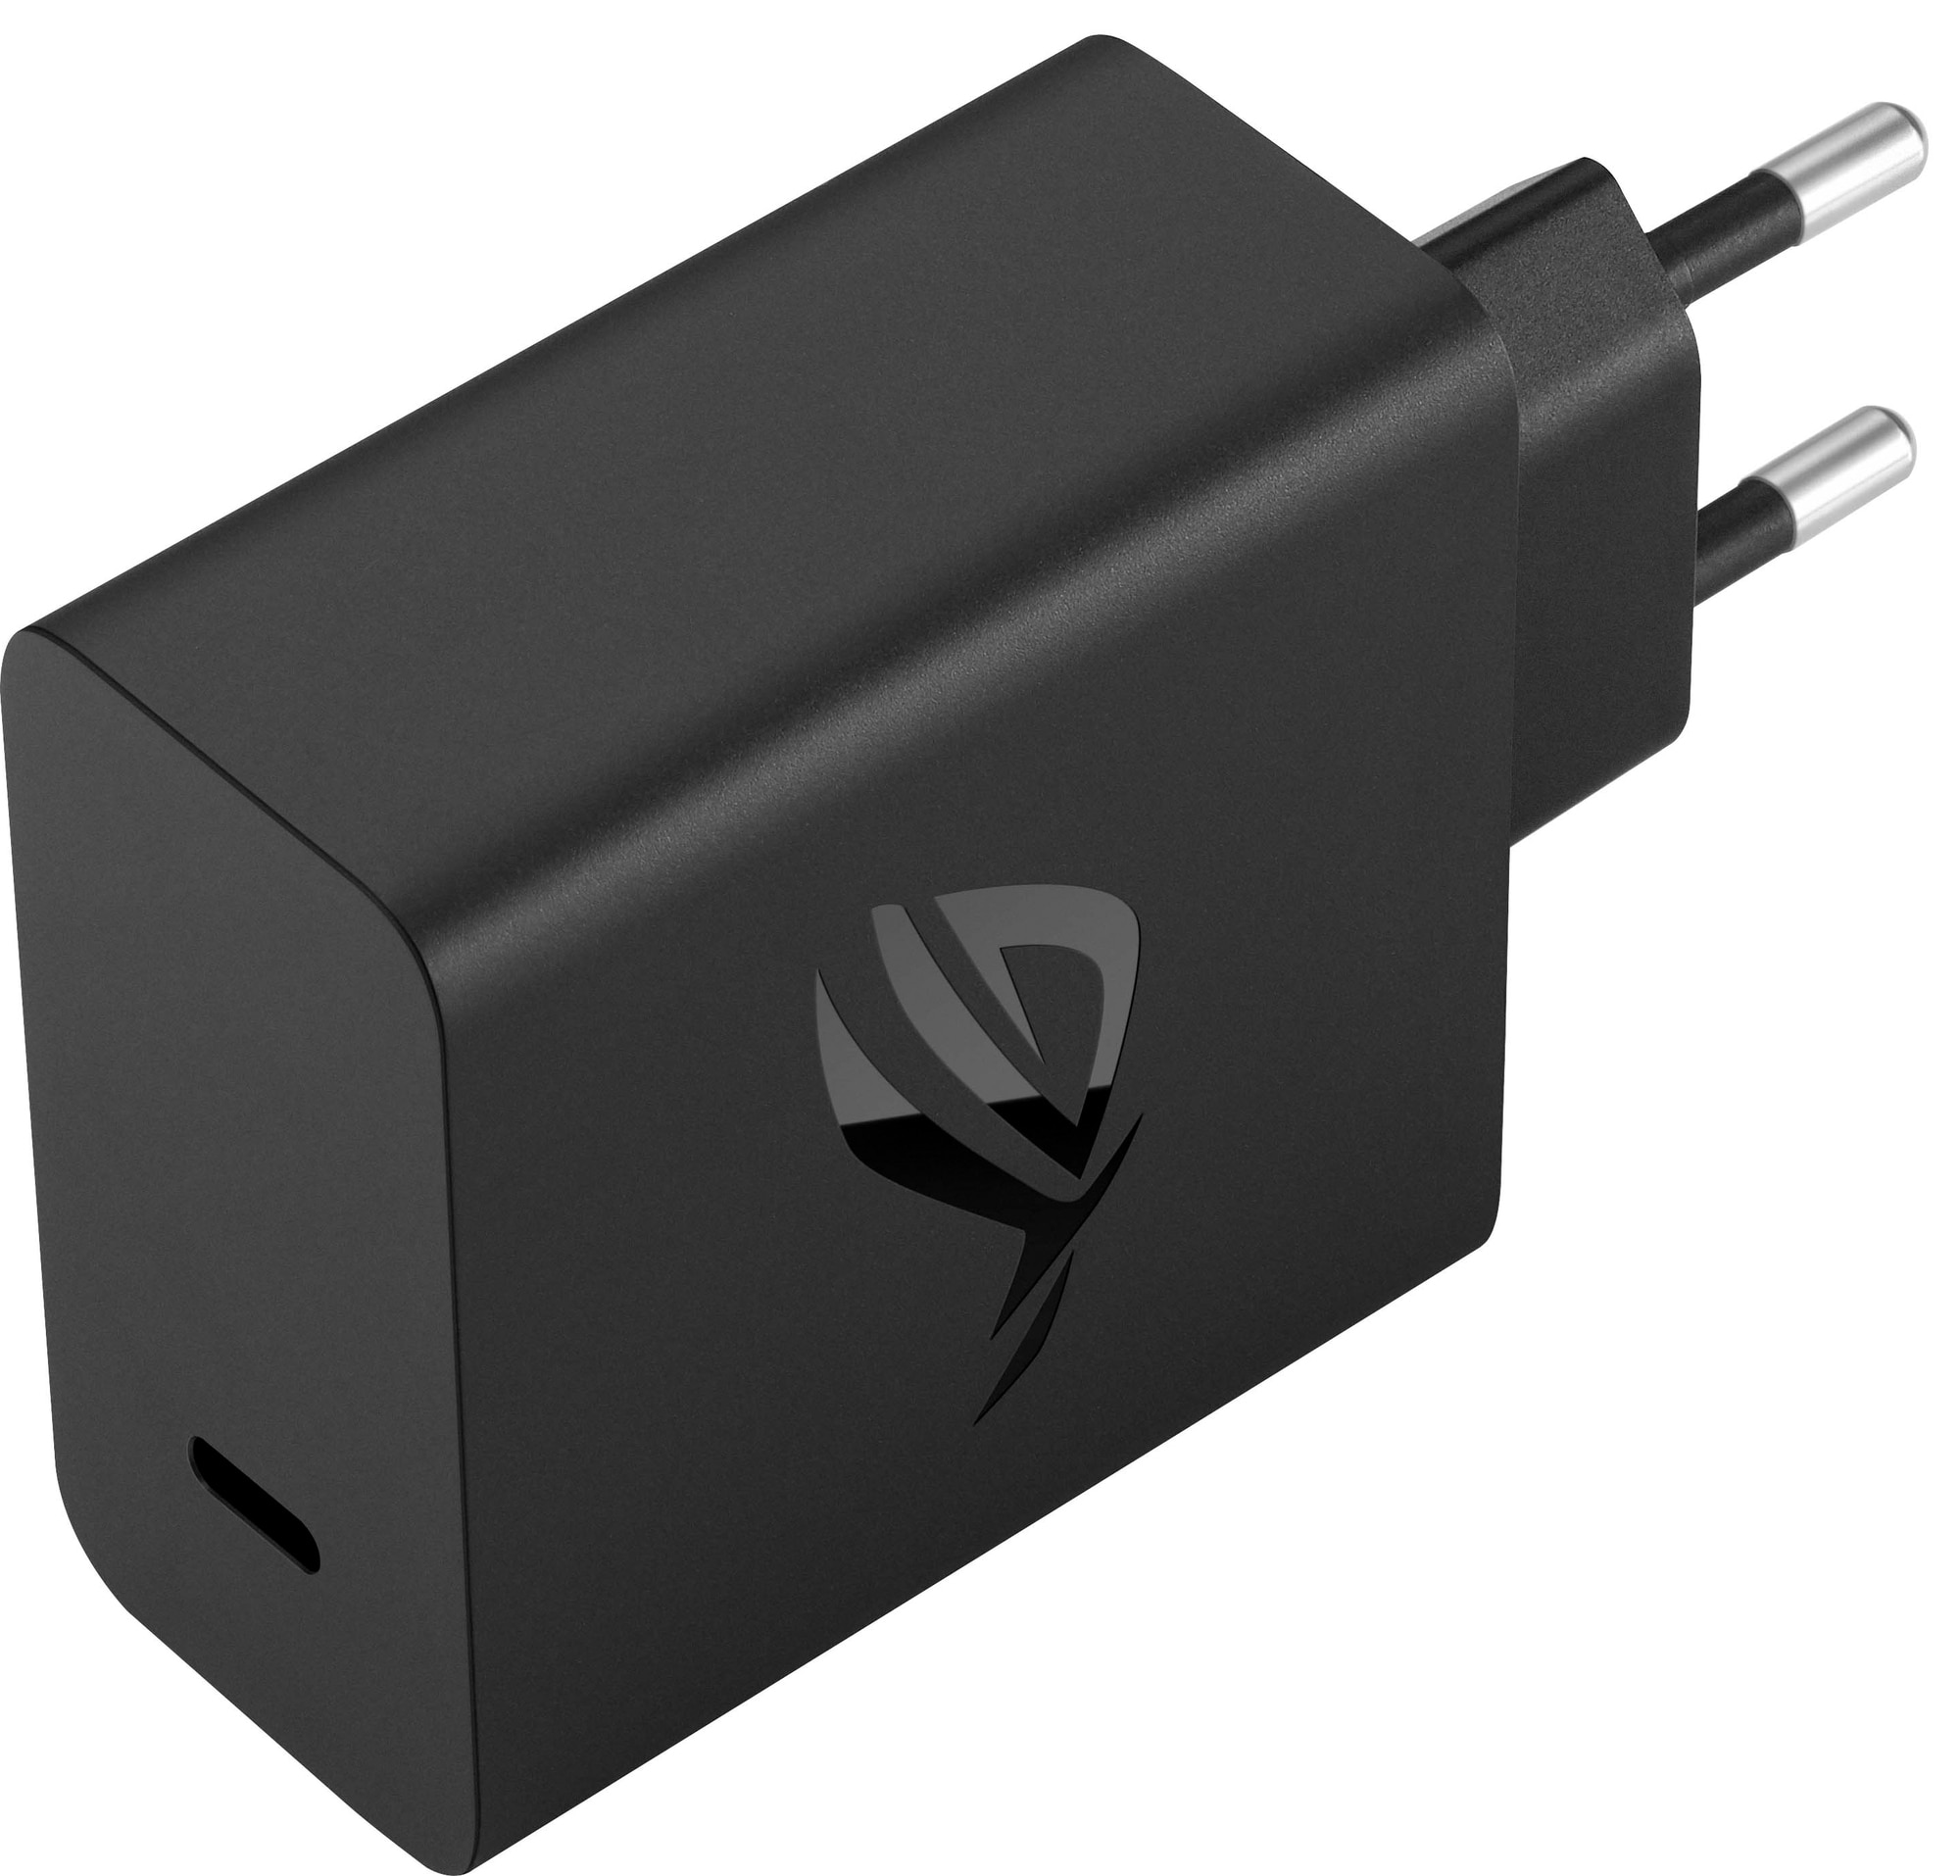 Hyret Fjernelse Prøve Asus ROG 65w USB-C-oplader (1,8m kabel) | Elgiganten